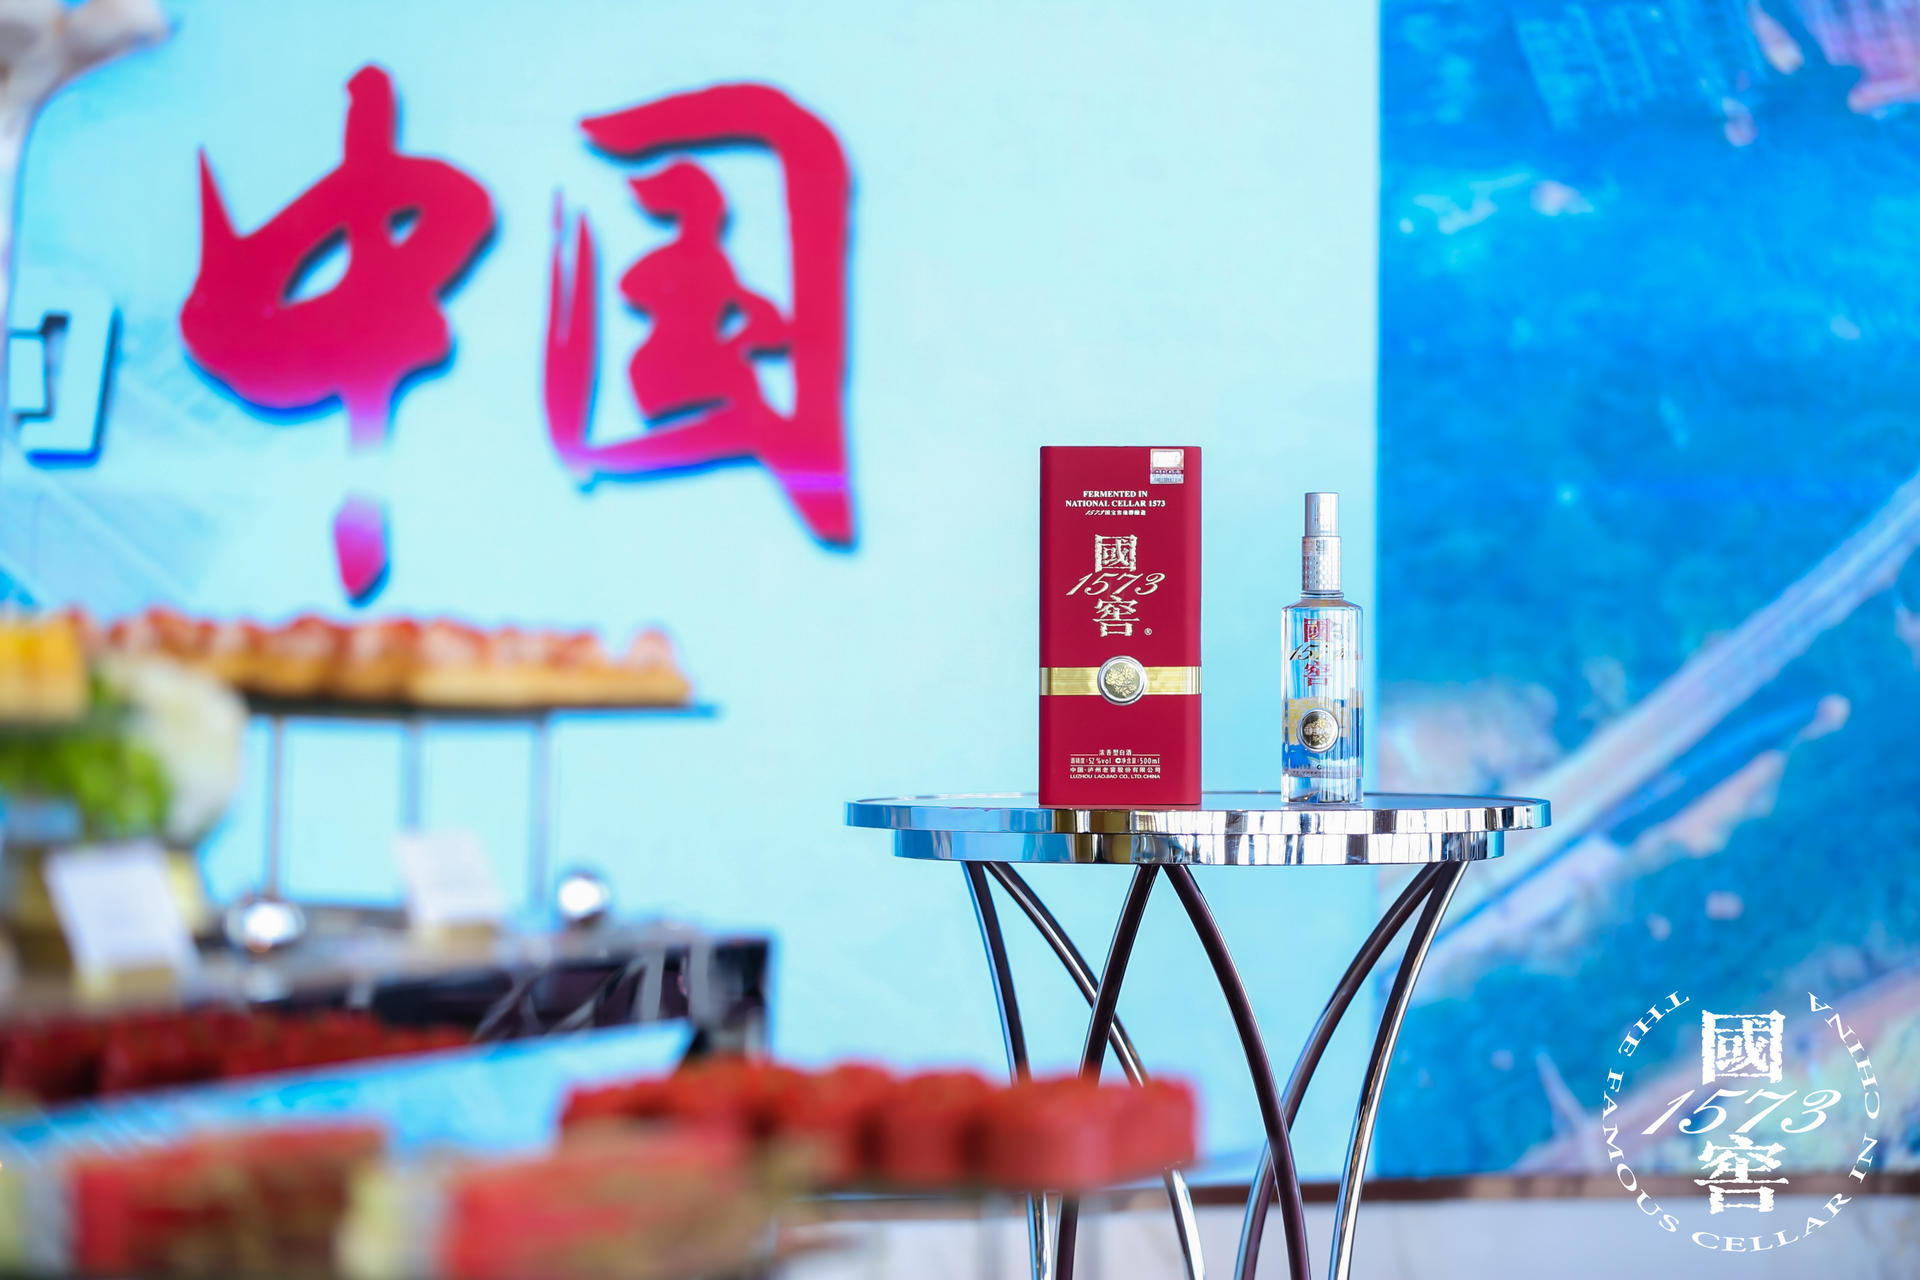 感受“品味 ·上海之巅”国窖1573·中国品鉴活动策划的独特魅力